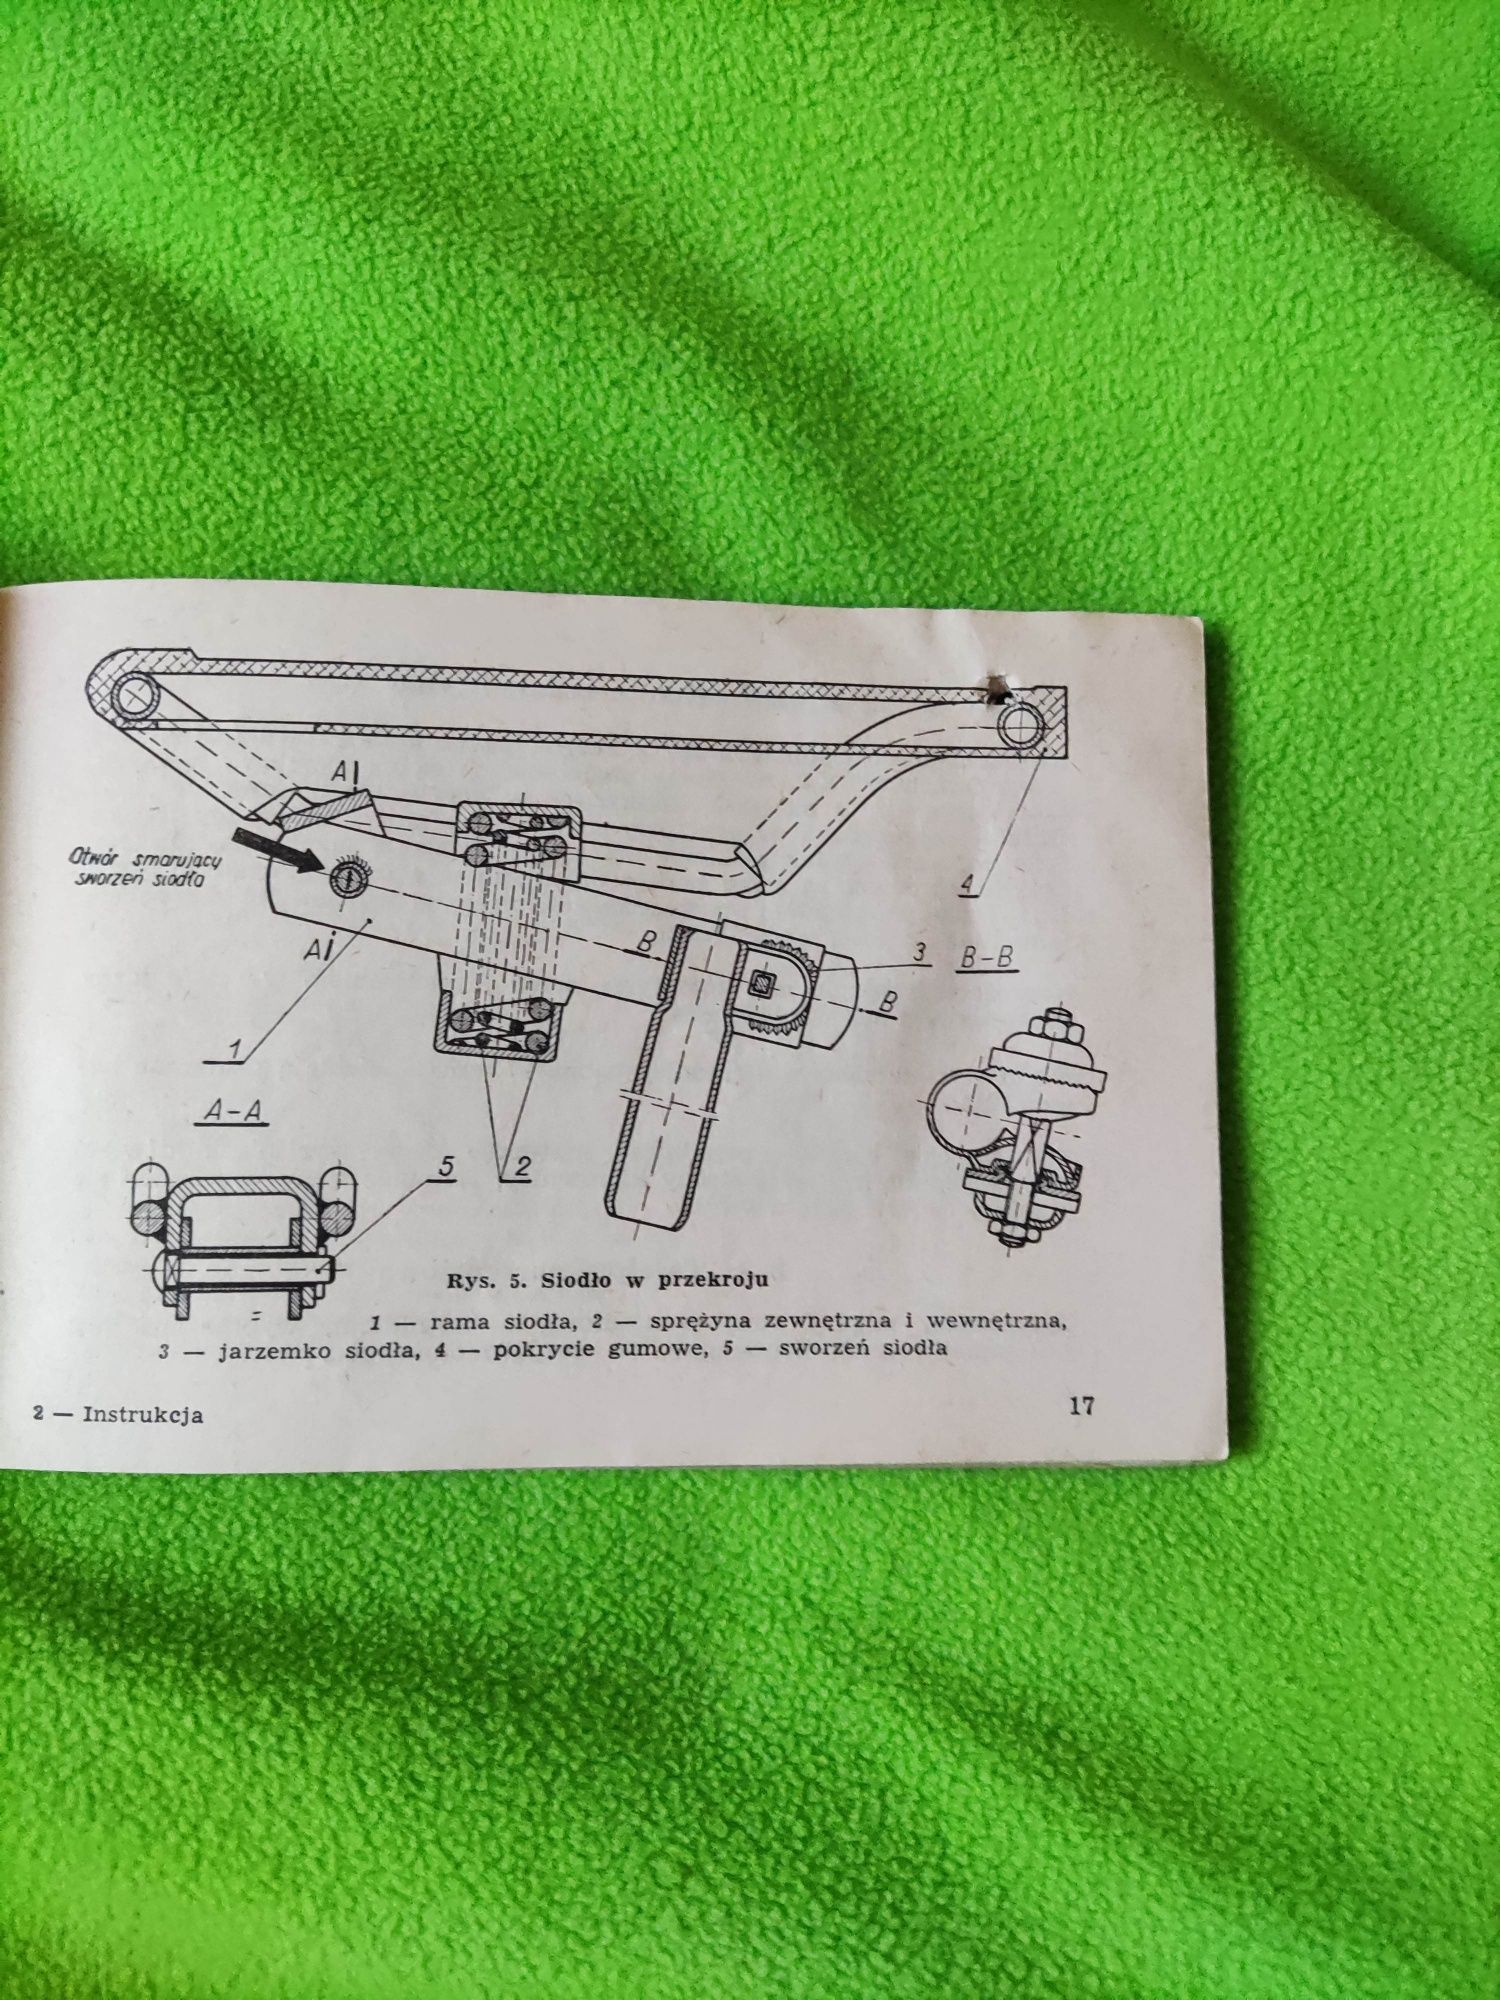 Instrukcja obsługi motoroweru Komar z roku 1964 ZZR

Stan jak na zdjęc